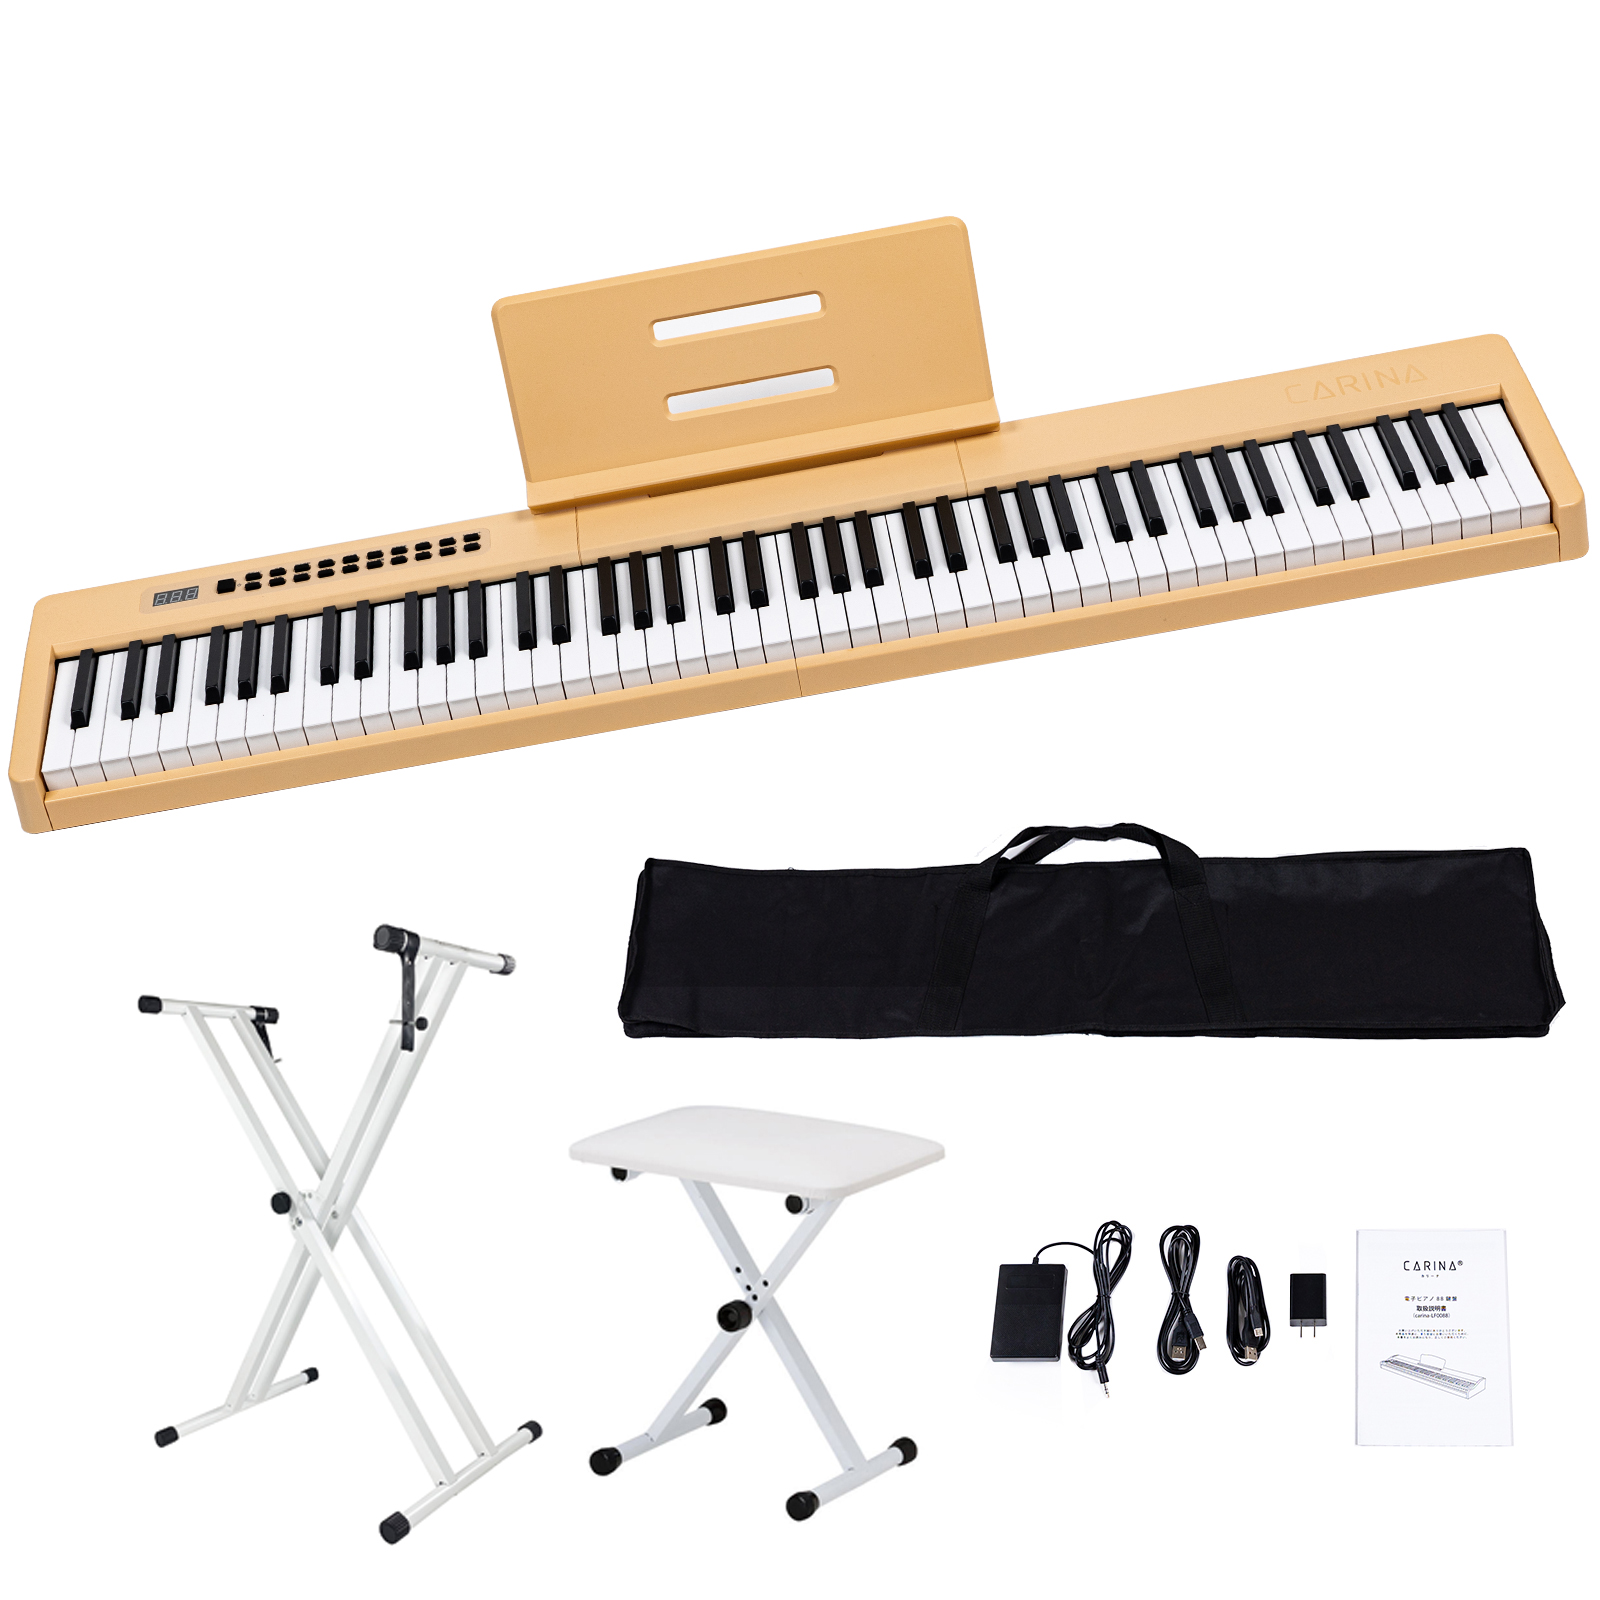 【4カラー】電子ピアノ 88鍵盤 スタンド 椅子セット dream音源 充電可能 日本語操作ボタン 軽量 キーボード コードレス スリム 軽い  MIDI対応 新学期 新生活